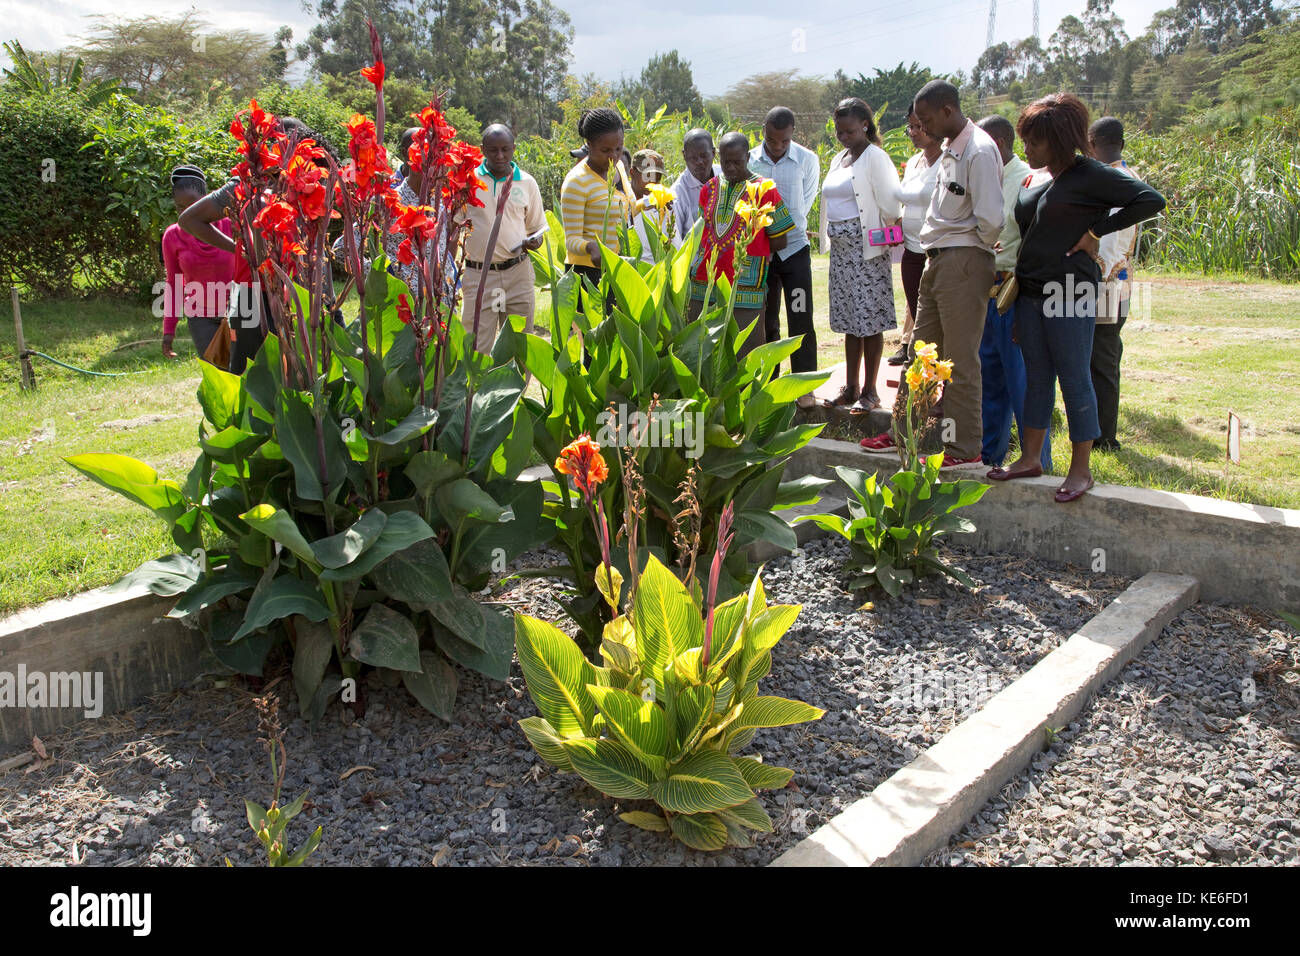 Visualisation des enseignants africains réservoir lit de gravier avec des fleurs poussant dans les zones humides artificielles construites sur l'horticulture flower farm Naivasha au Kenya Banque D'Images